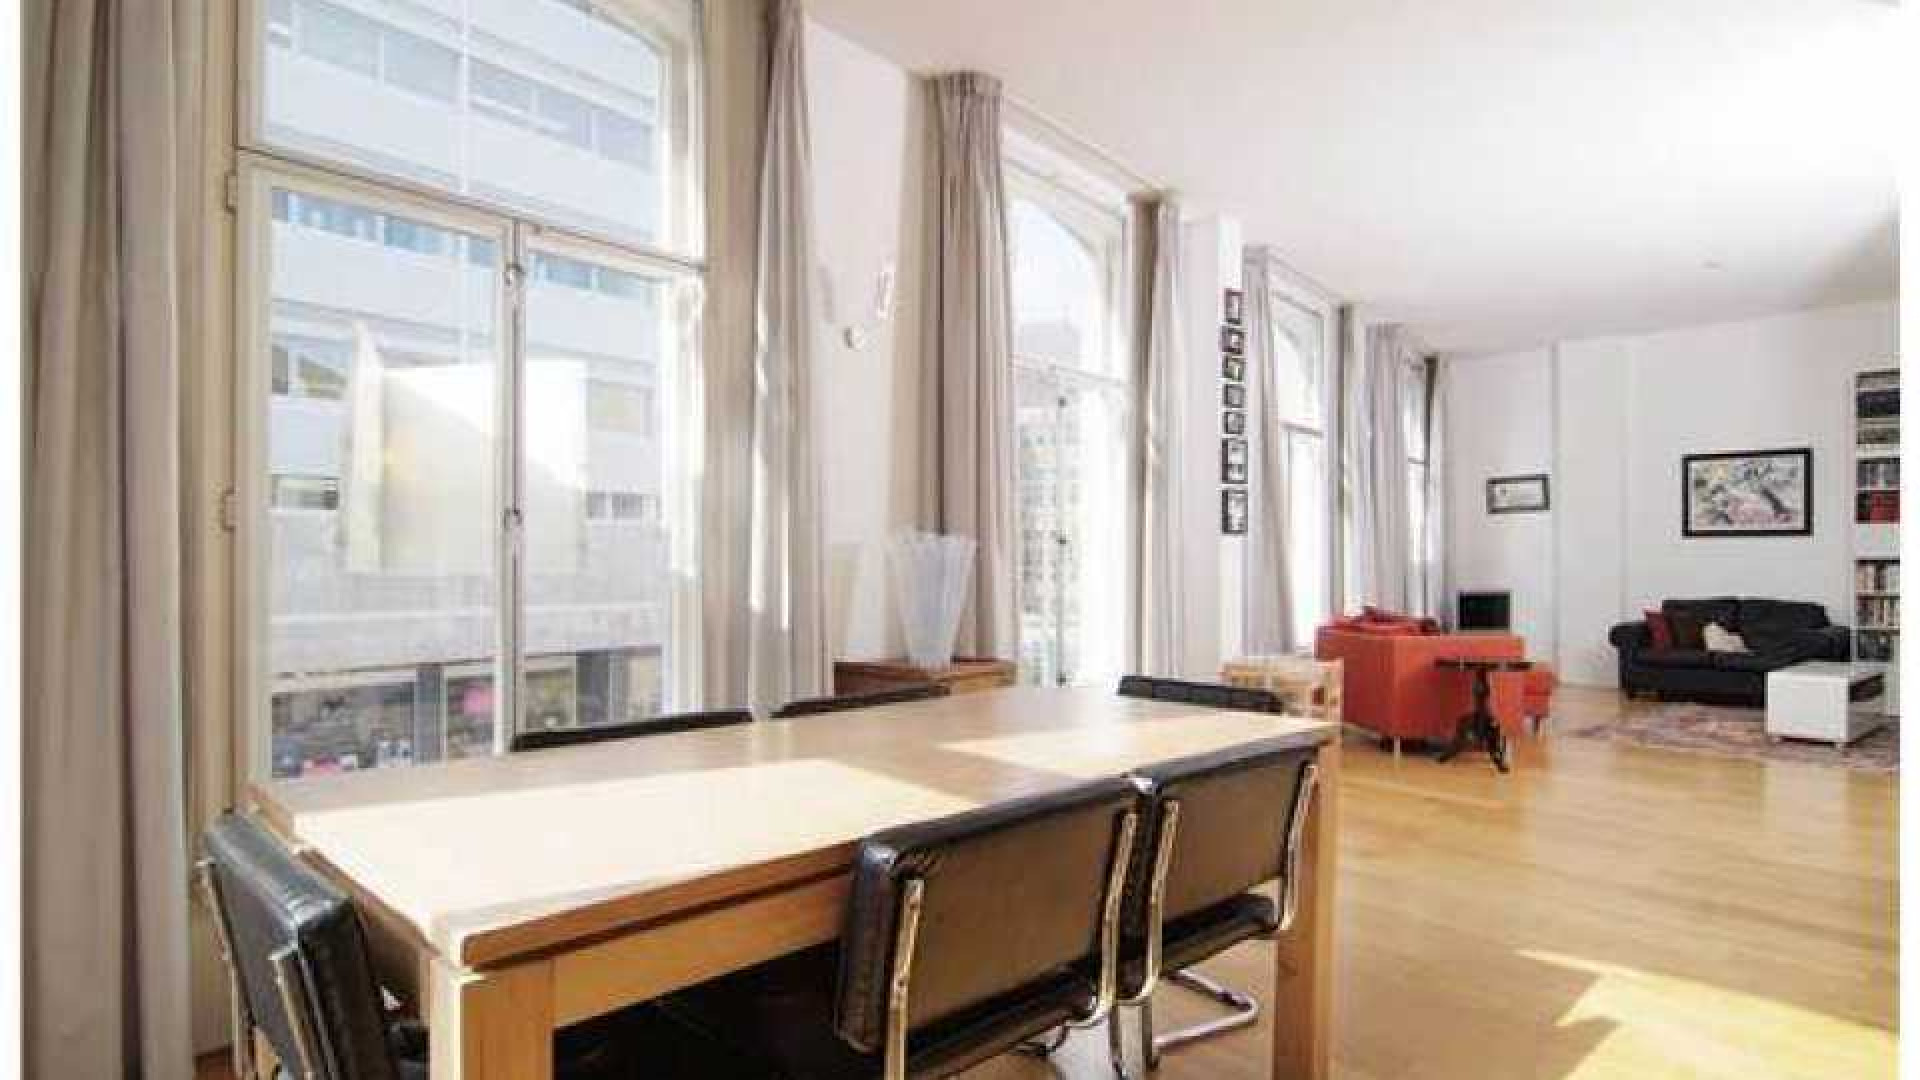 Charles Groenhuijsen huurt leuk appartement in centrum van Utrecht. Zie foto's 9